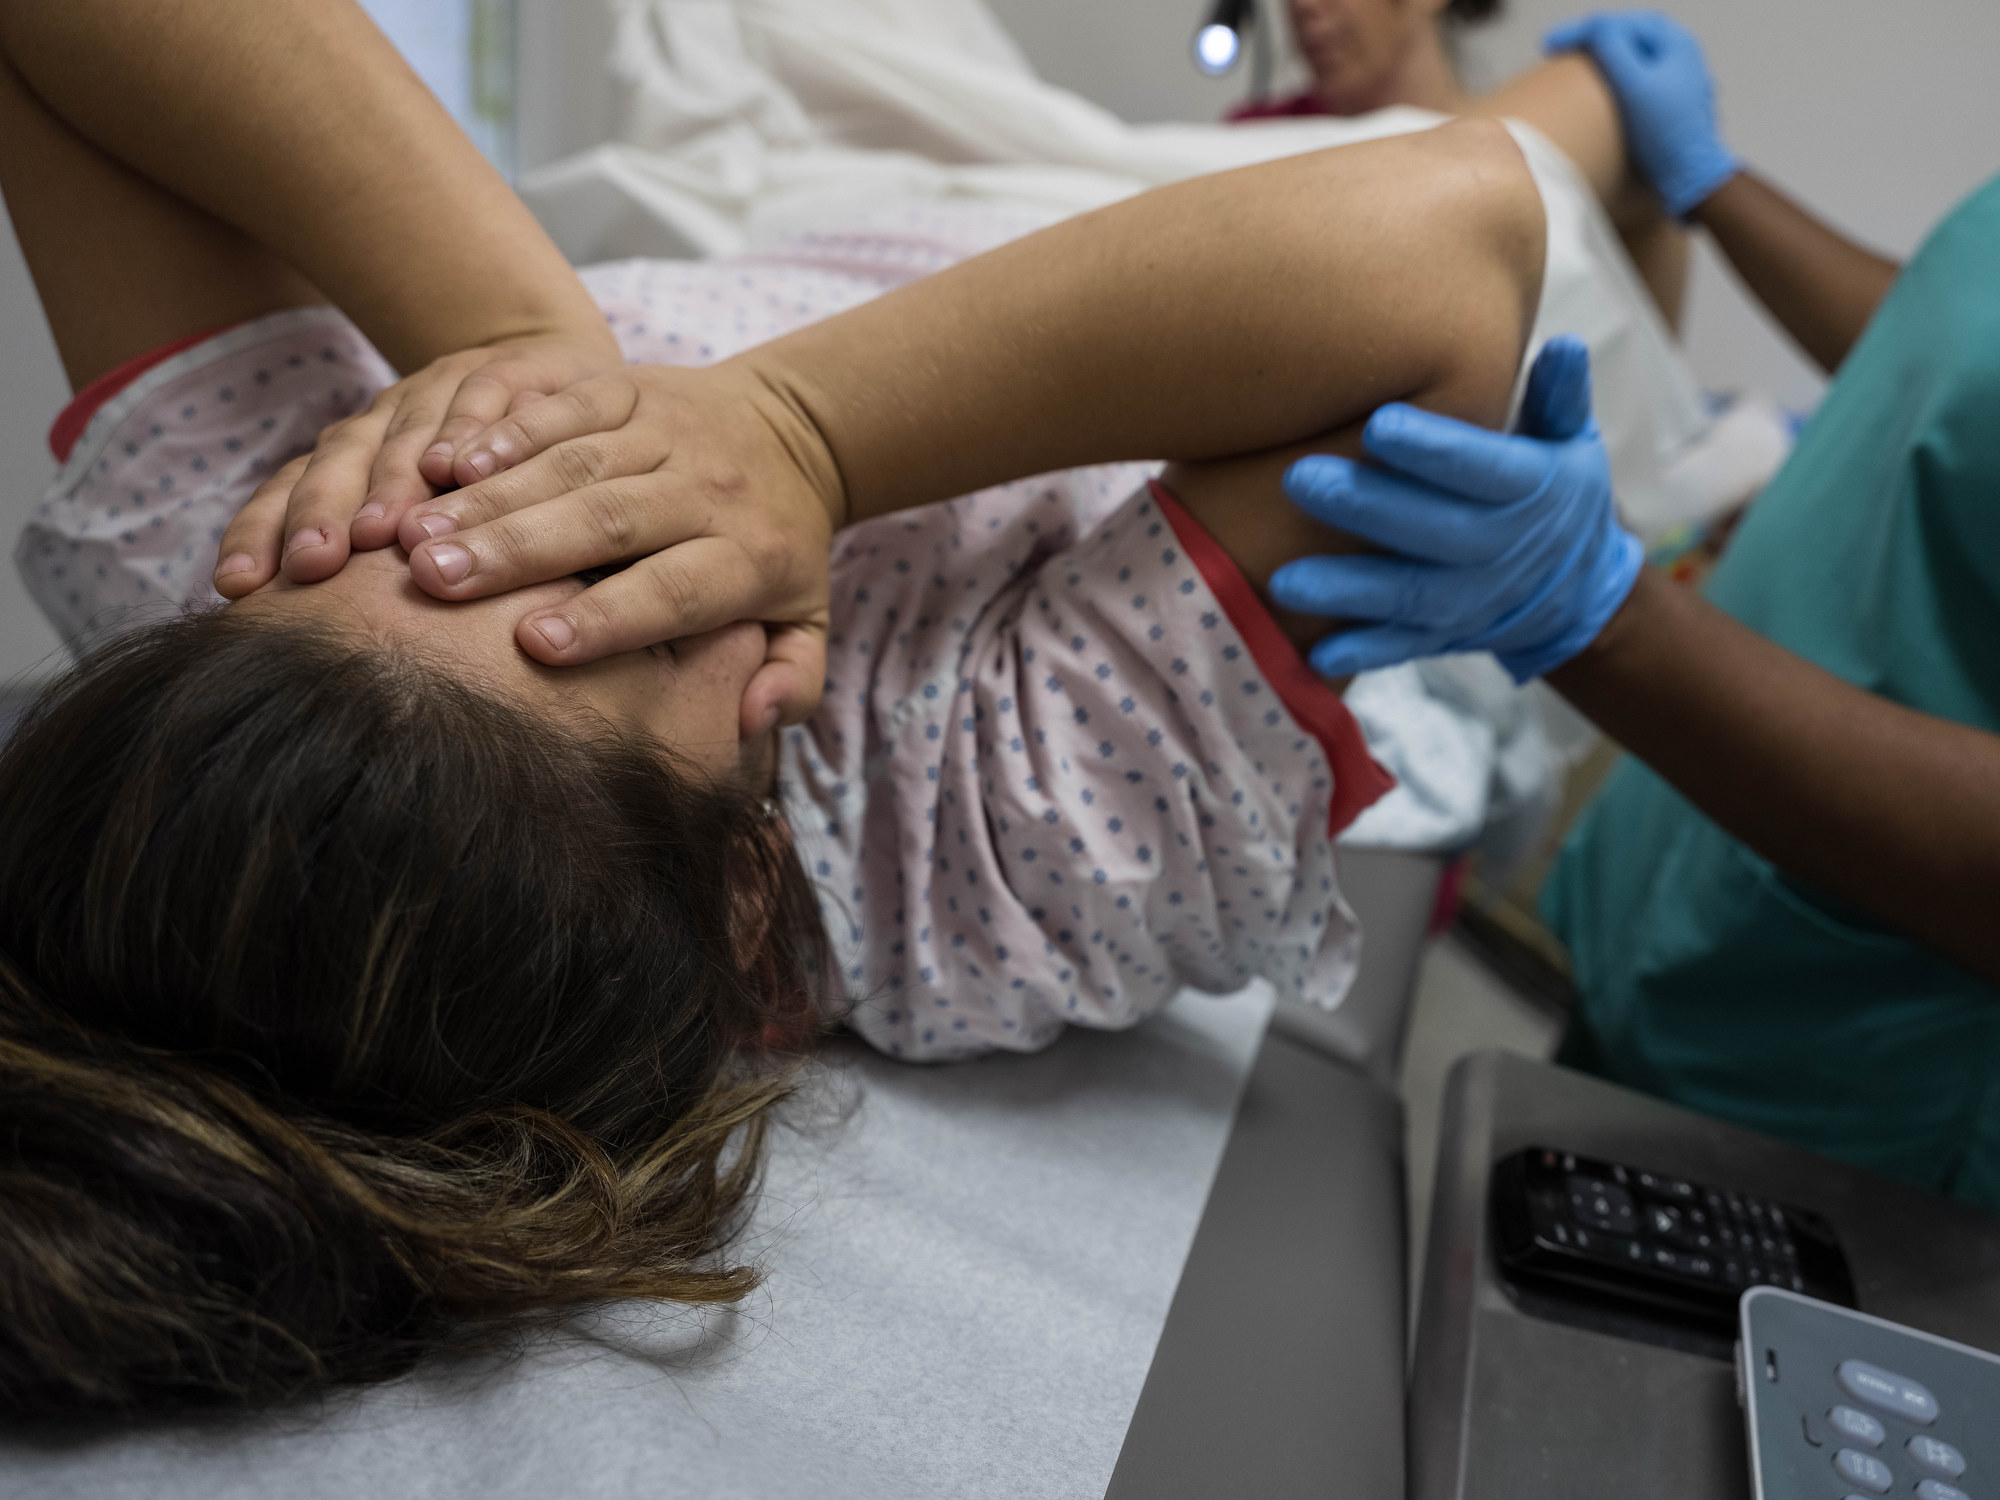 A woman getting an ultrasound